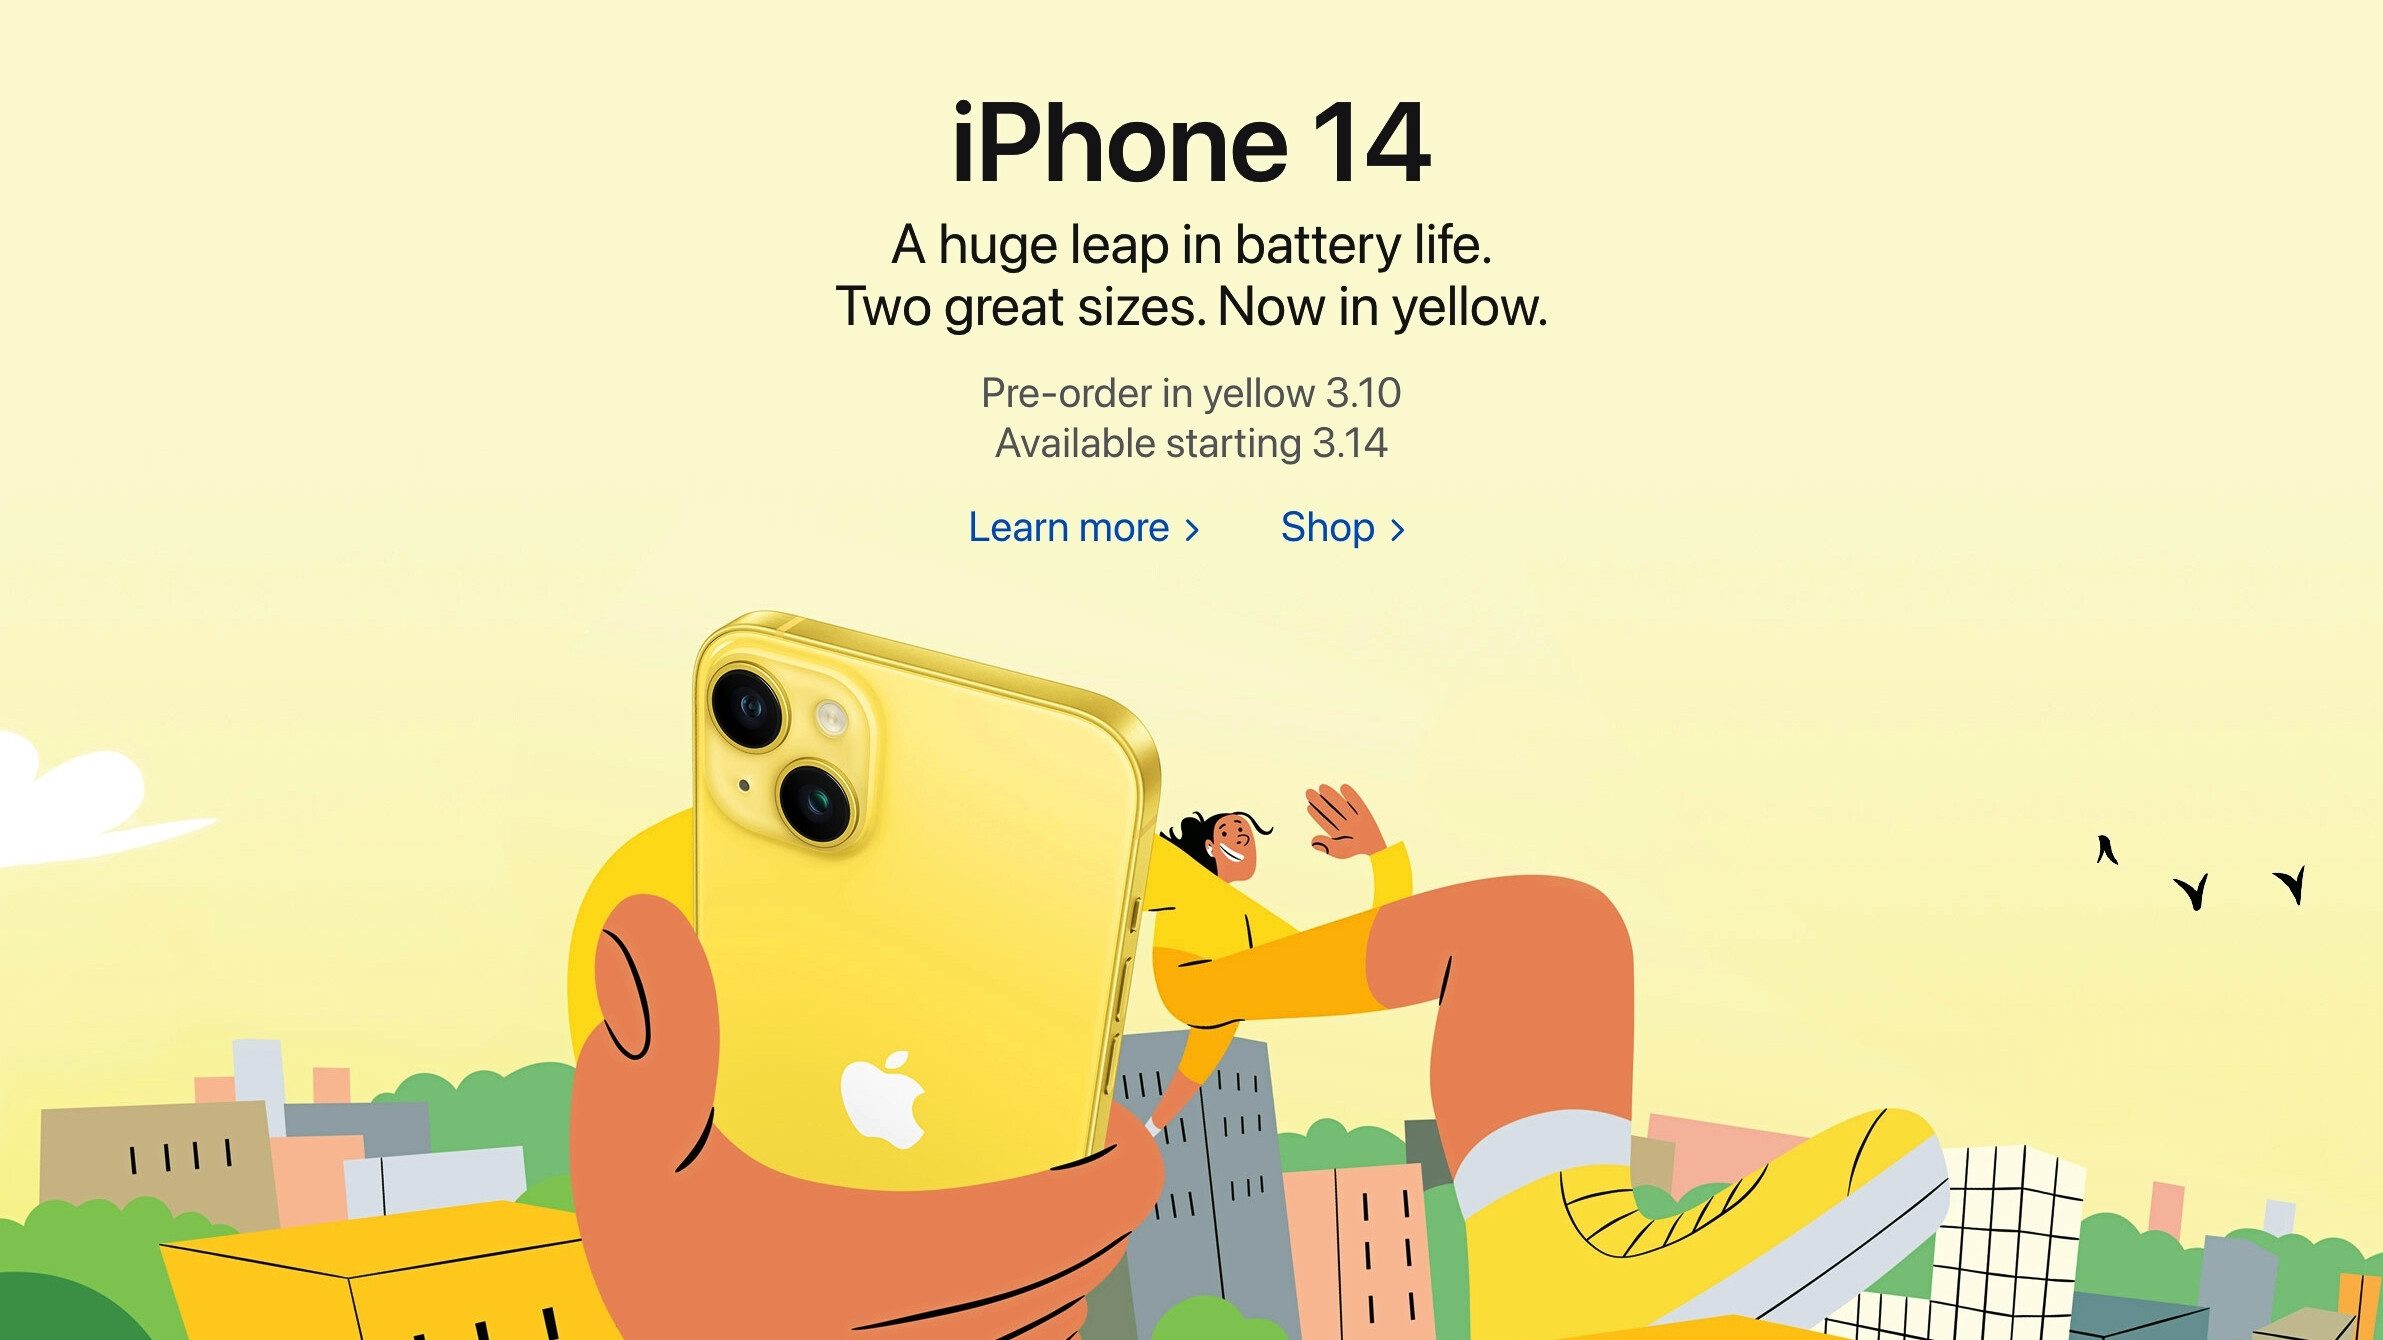 Apples Marketingmaschine läuft.  - Das neue gelbe iPhone 14 ist ein Gedankenspiel: Millionen fallen auf den heißesten, aber schlechtesten Apple-Deal der Geschichte herein?